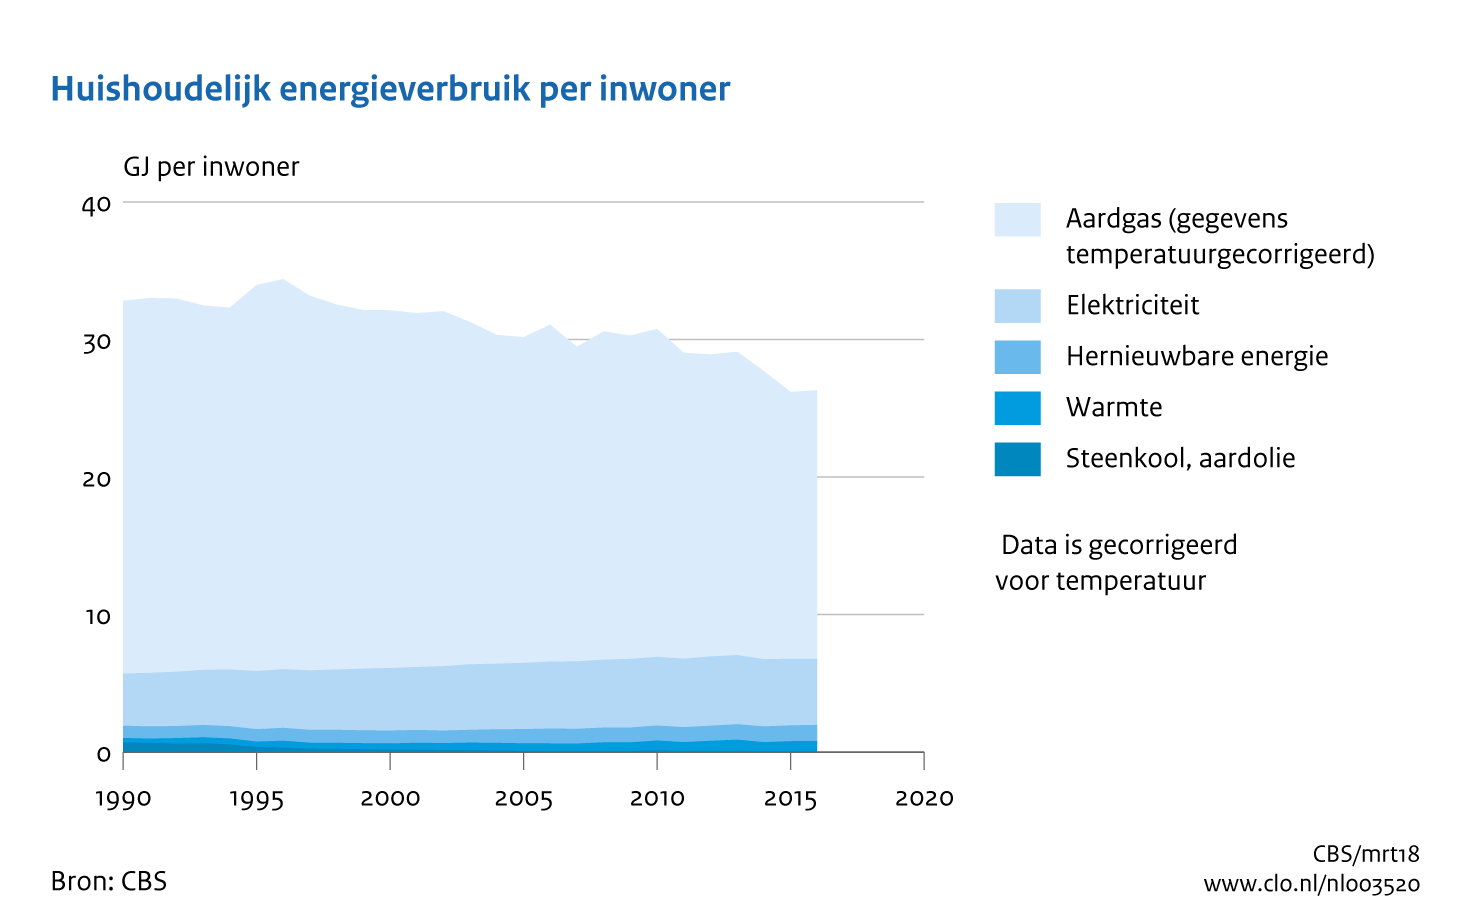 Figuur Energieverbruik huishoudens per inwoner, 1990-2016. In de rest van de tekst wordt deze figuur uitgebreider uitgelegd.